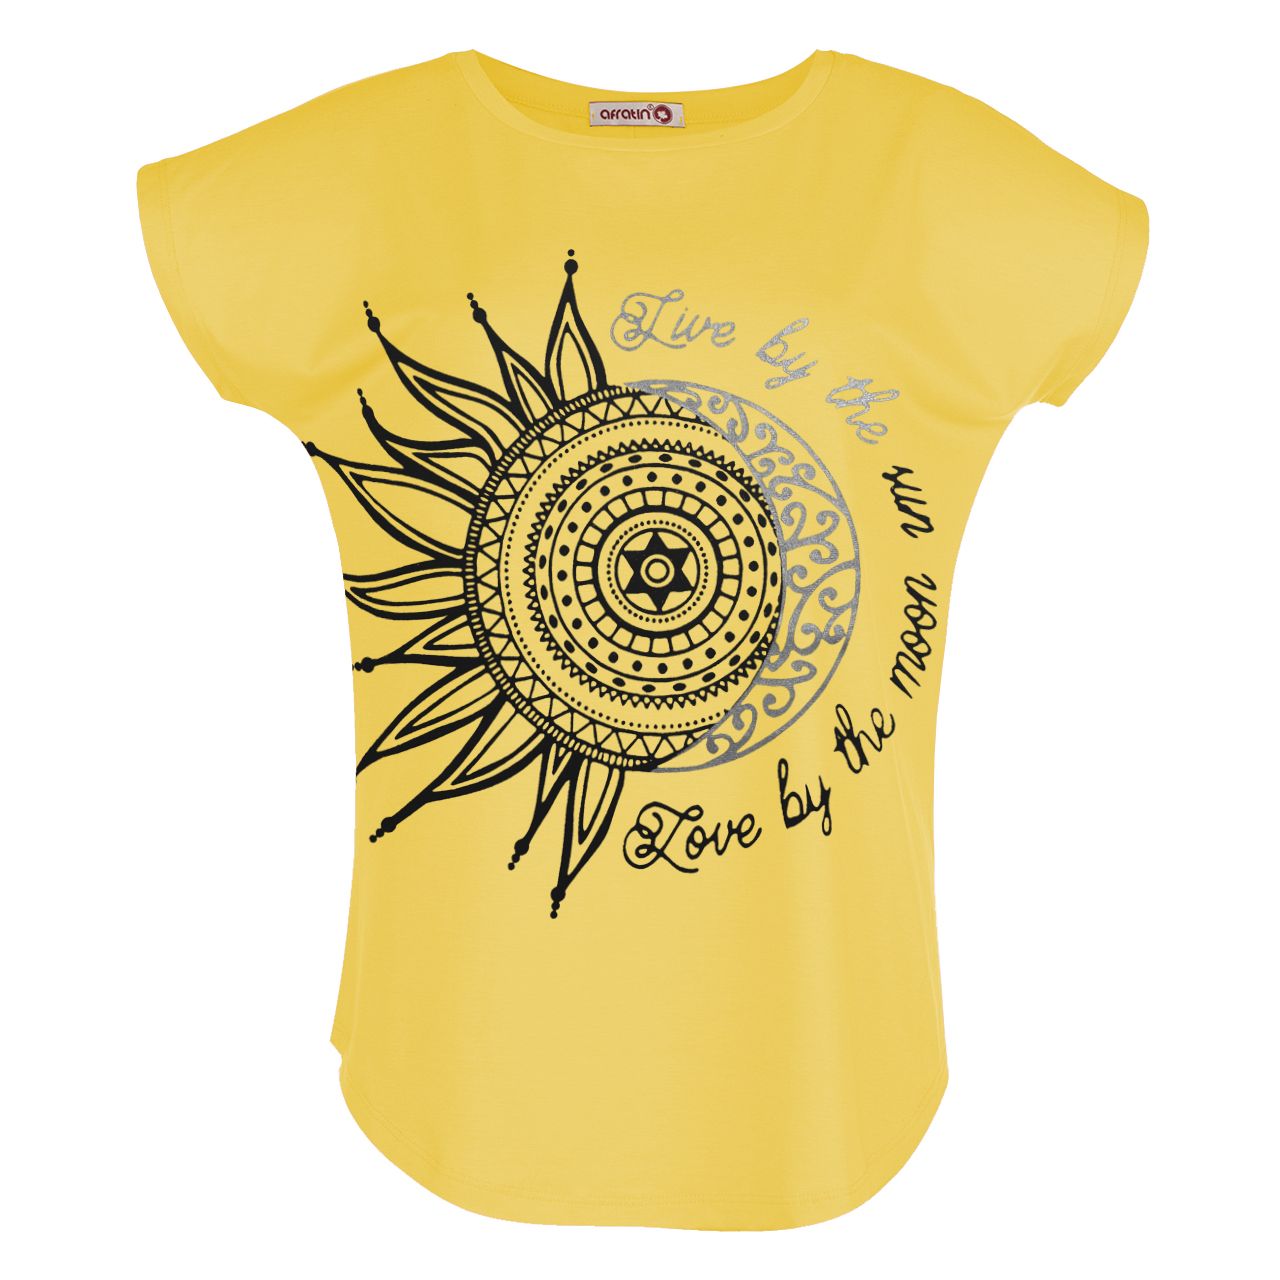  تی شرت زنانه افراتین طرح ماه و خورشید کد 2548 رنگ زرد -  - 1